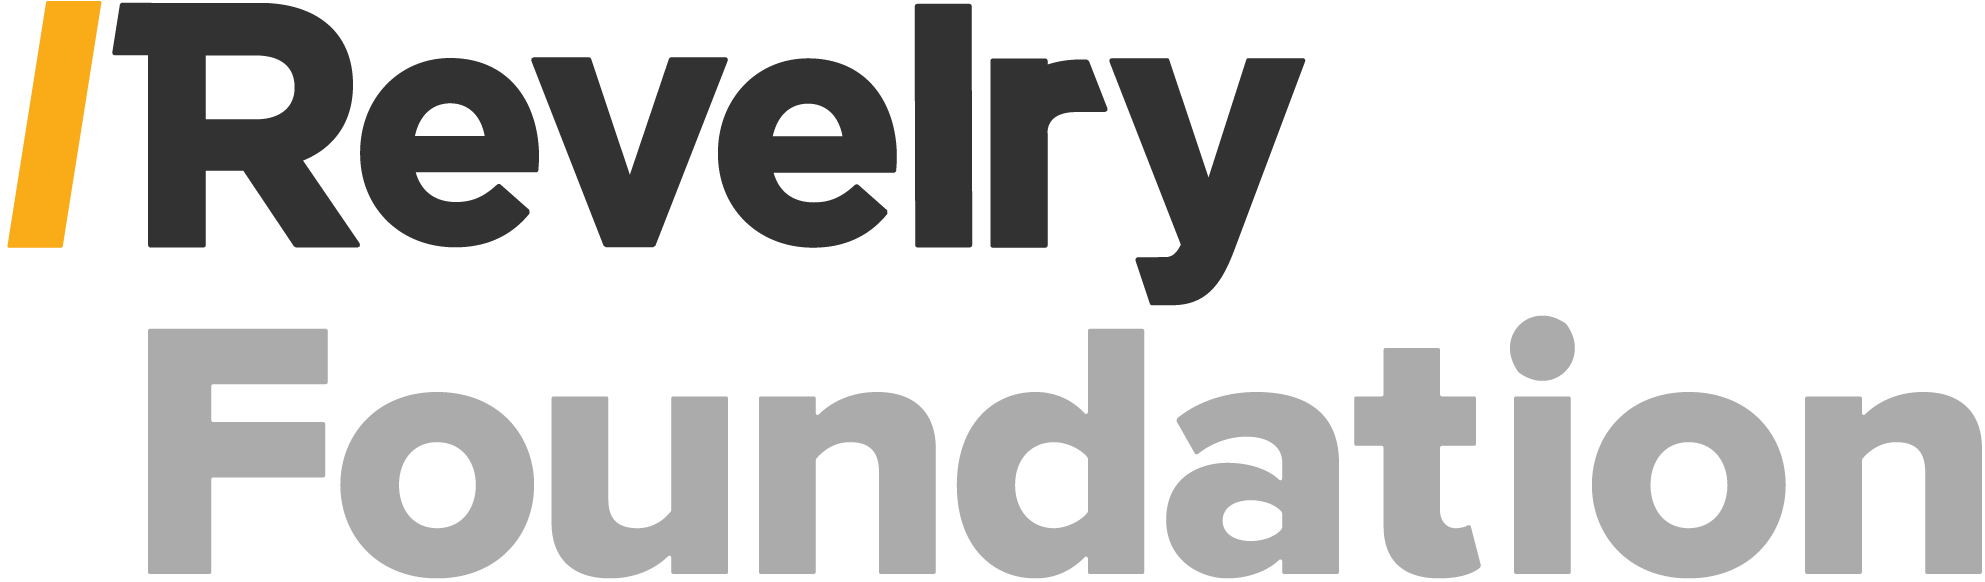 Revelry Foundation